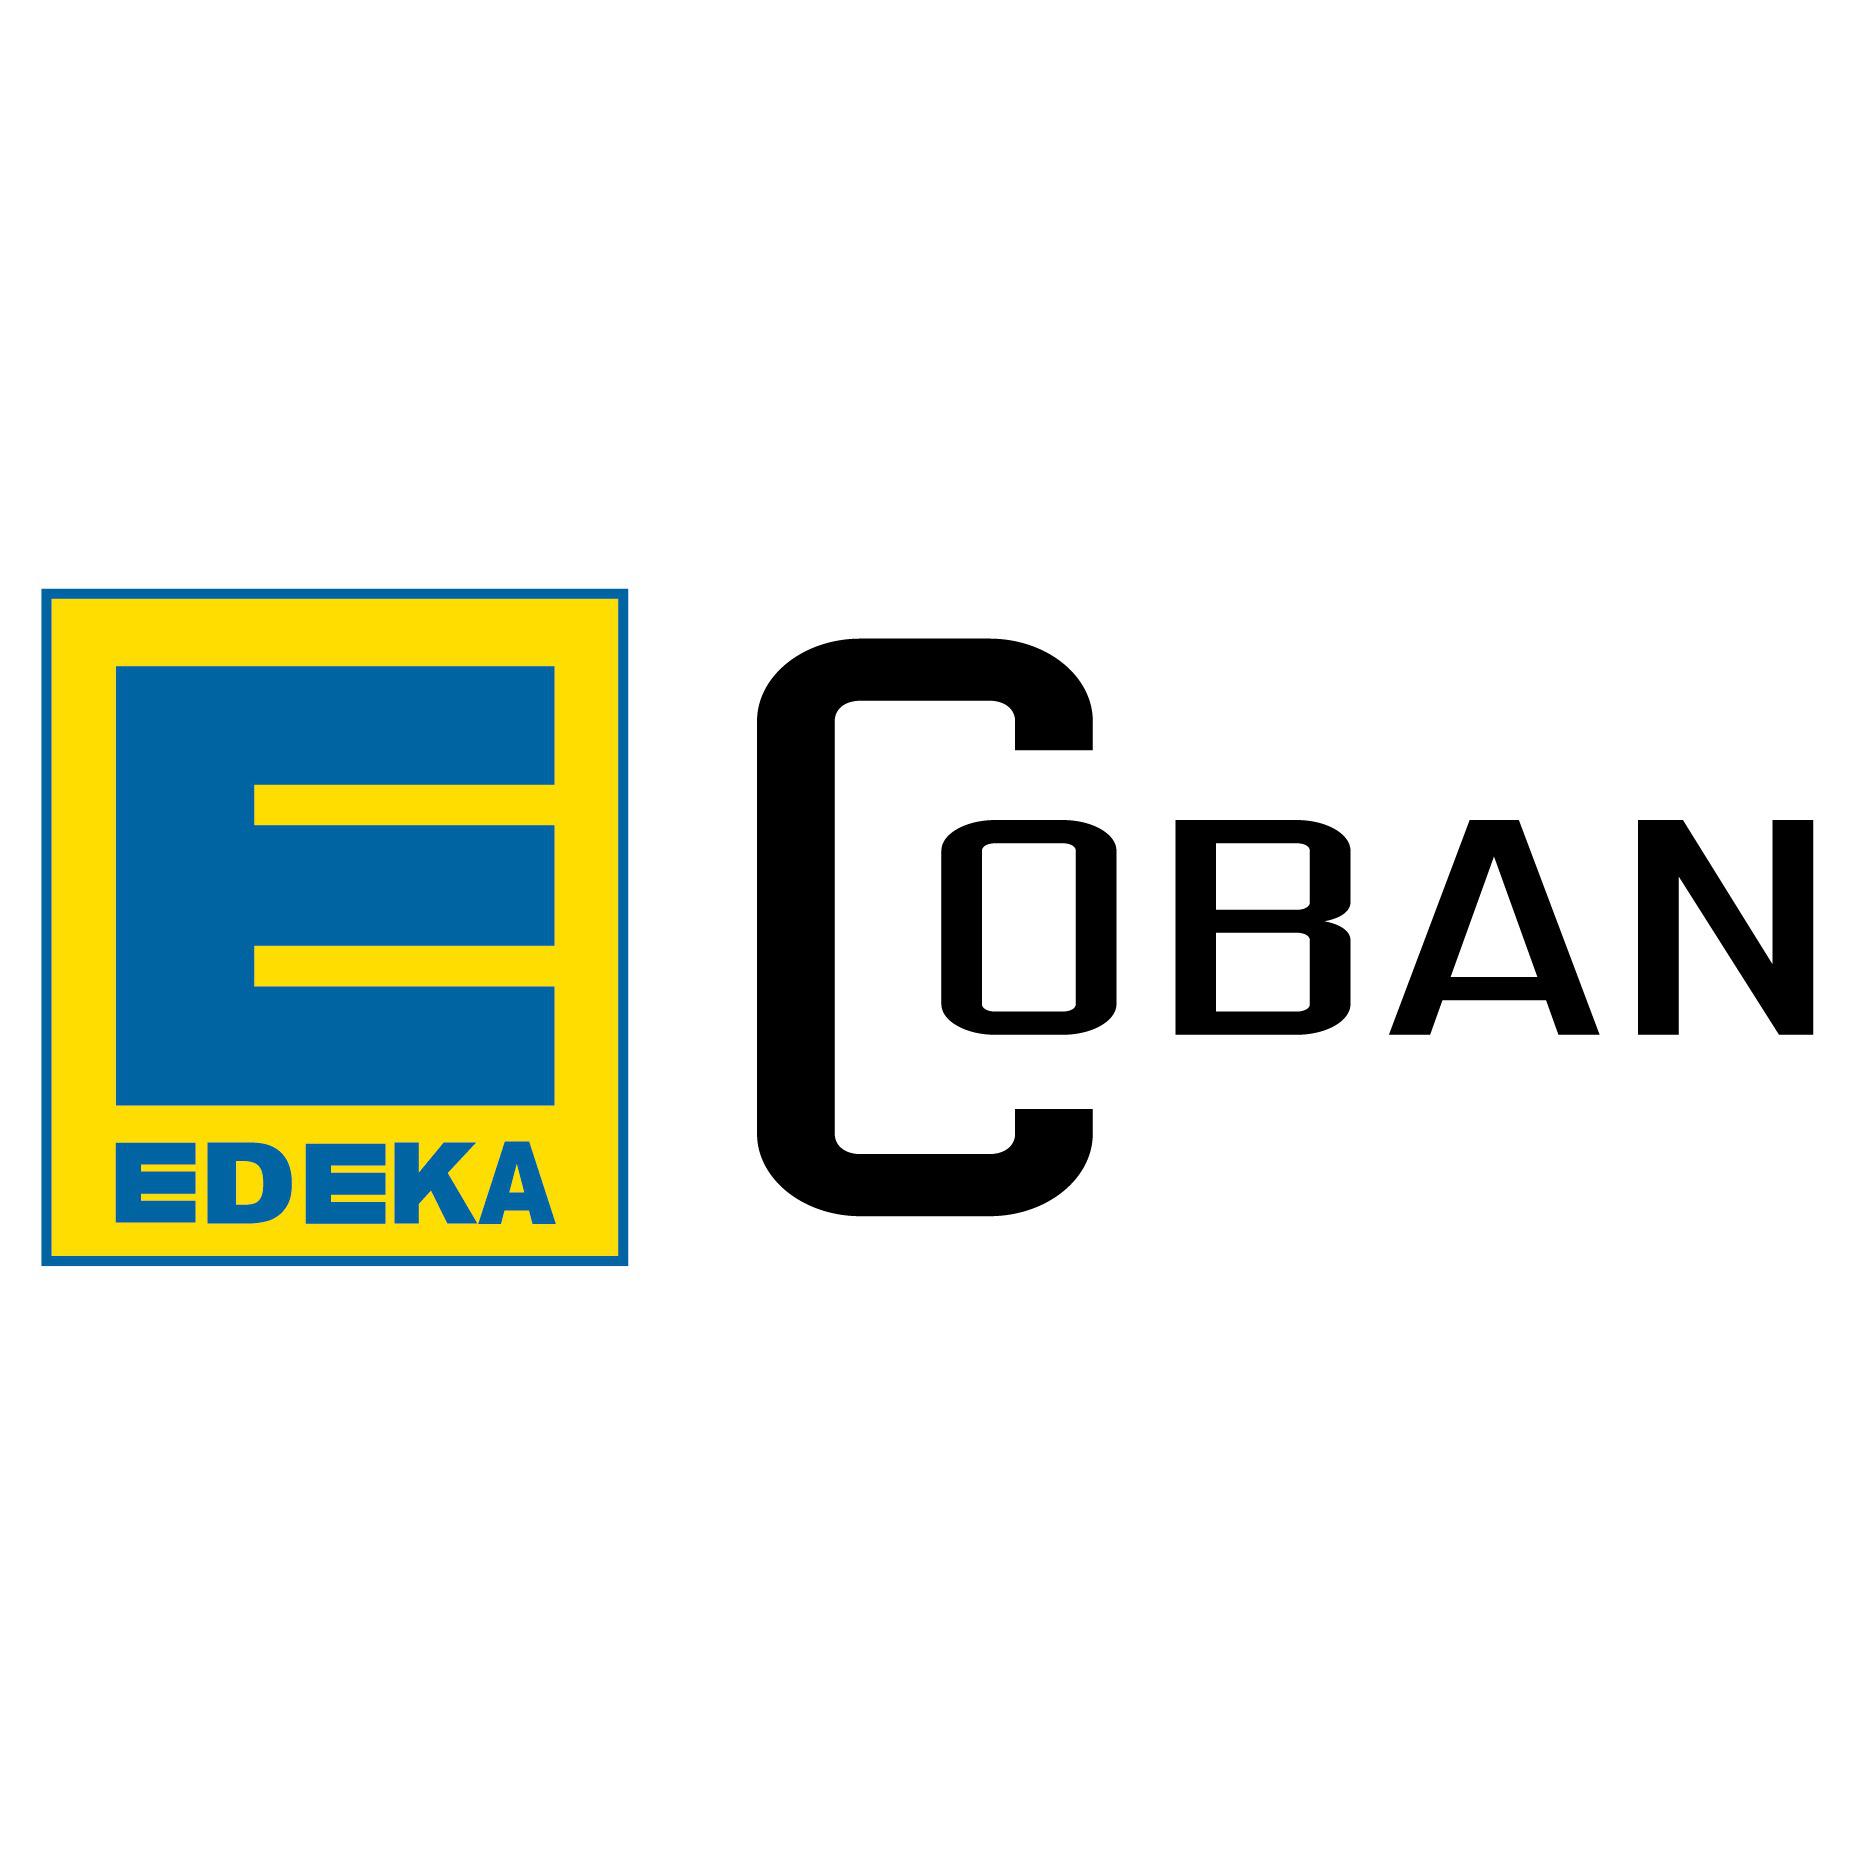 Logo Edeka Coban